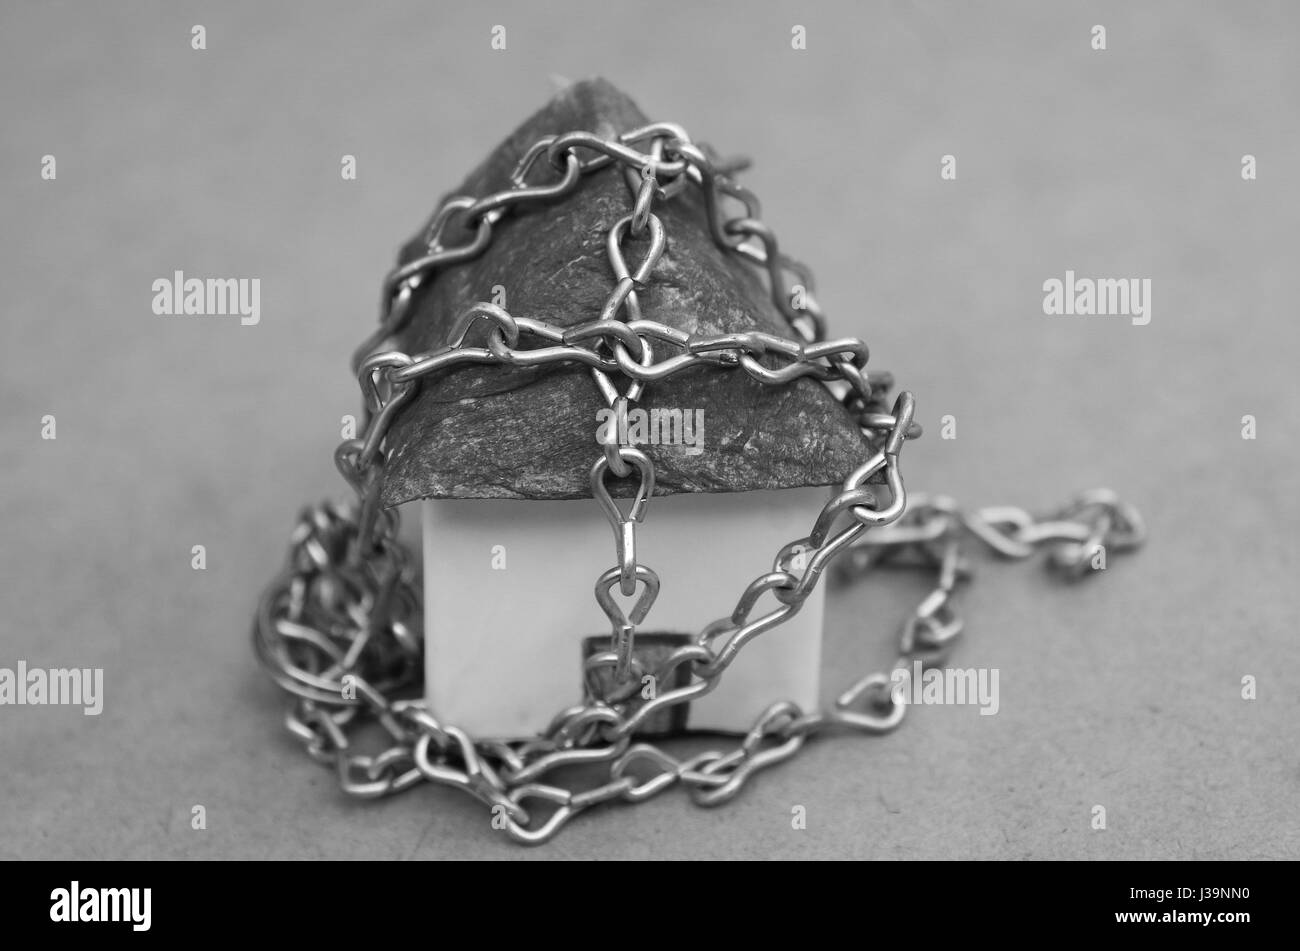 Une belle chaîne enroulée autour d'un petit modèle maison faite de papier en noir et blanc Banque D'Images